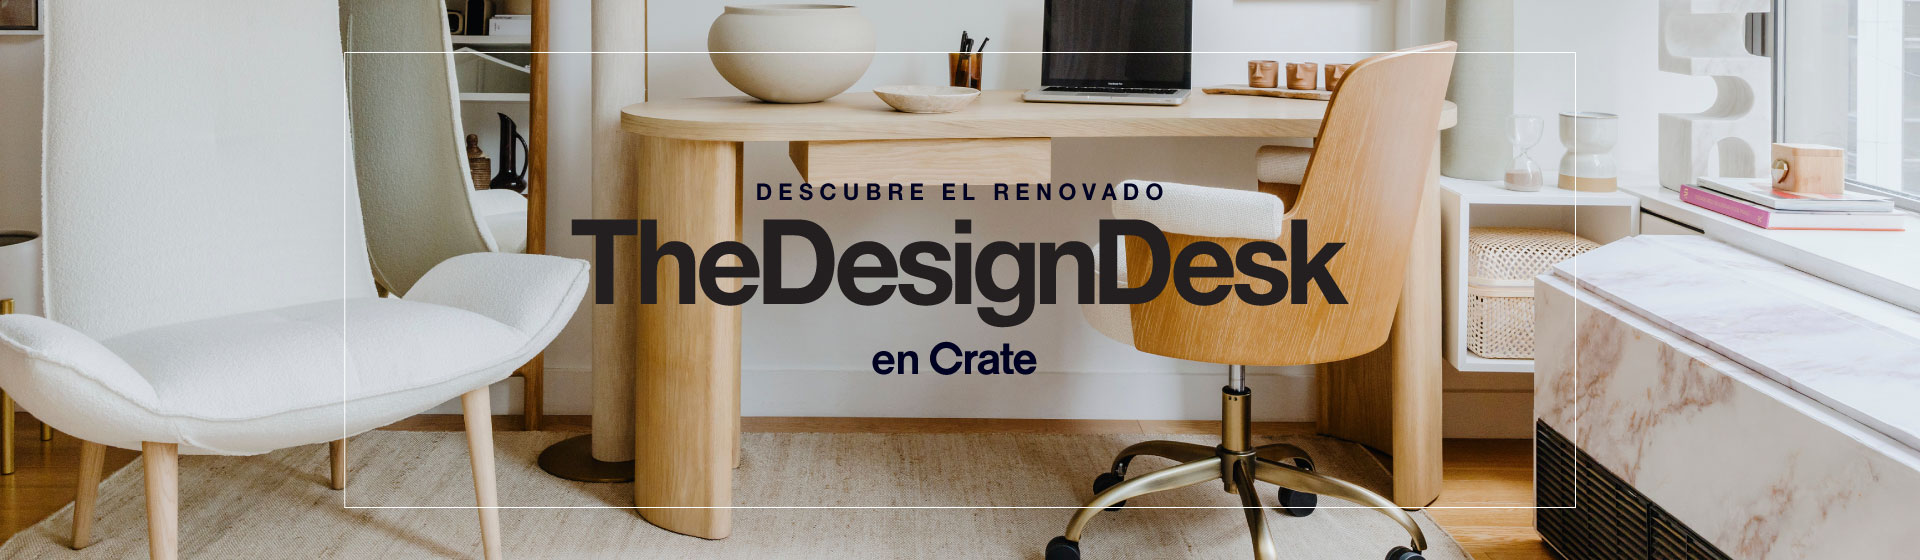 Descubre el renovado The Design Desk en Crate